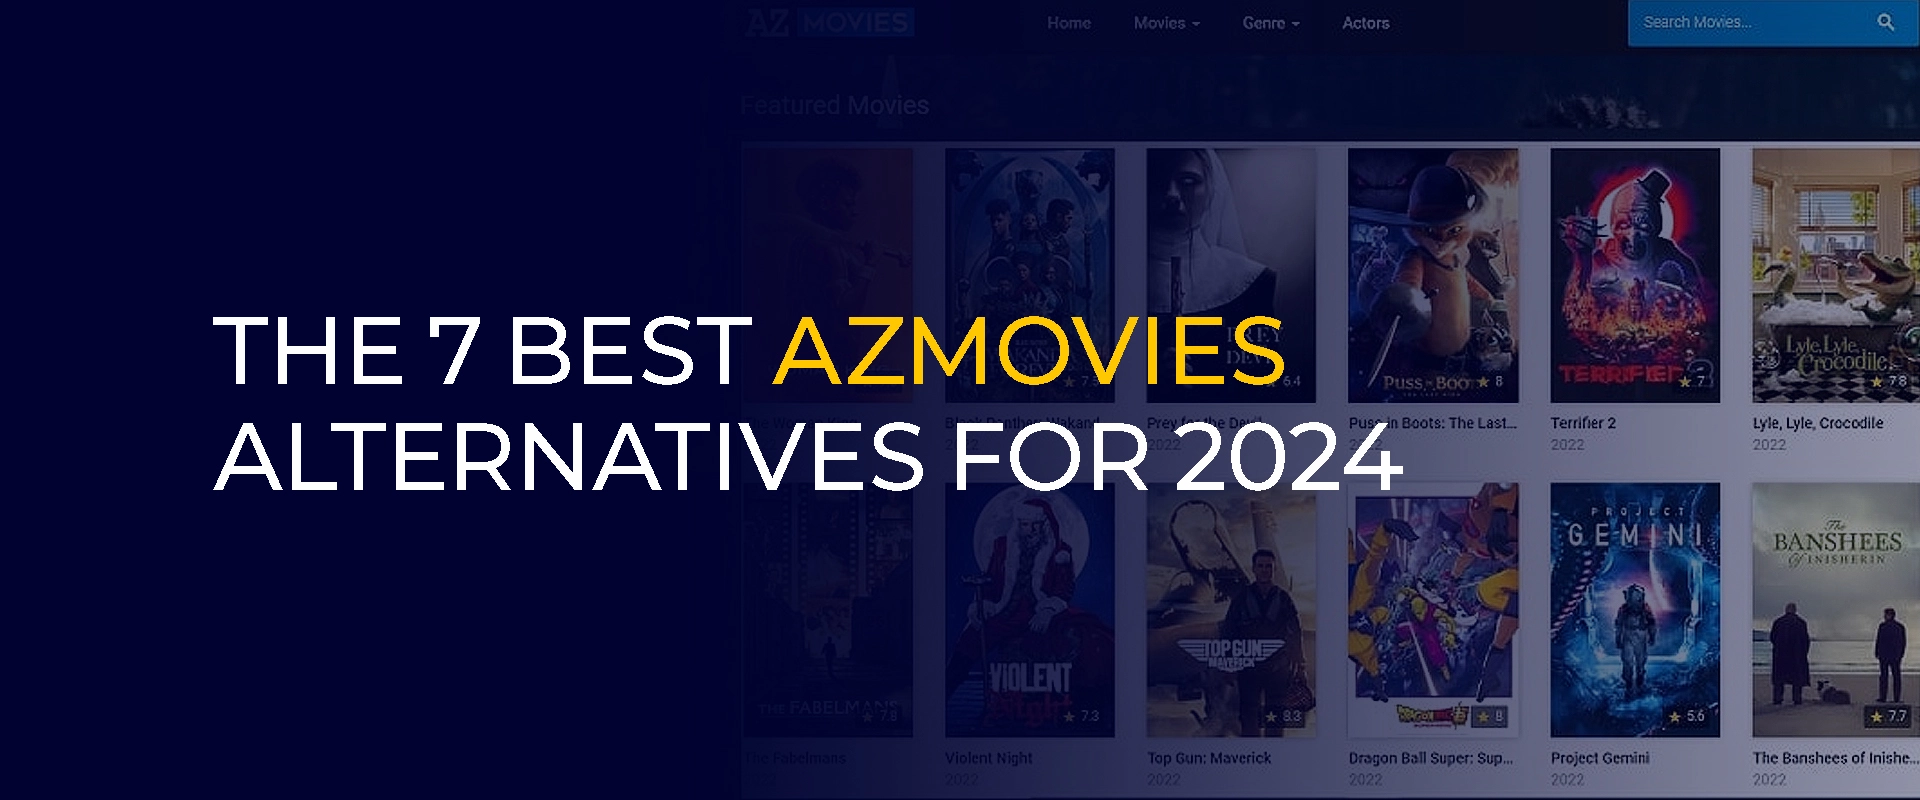 7 najlepszych alternatyw dla Azmovies na rok 2024